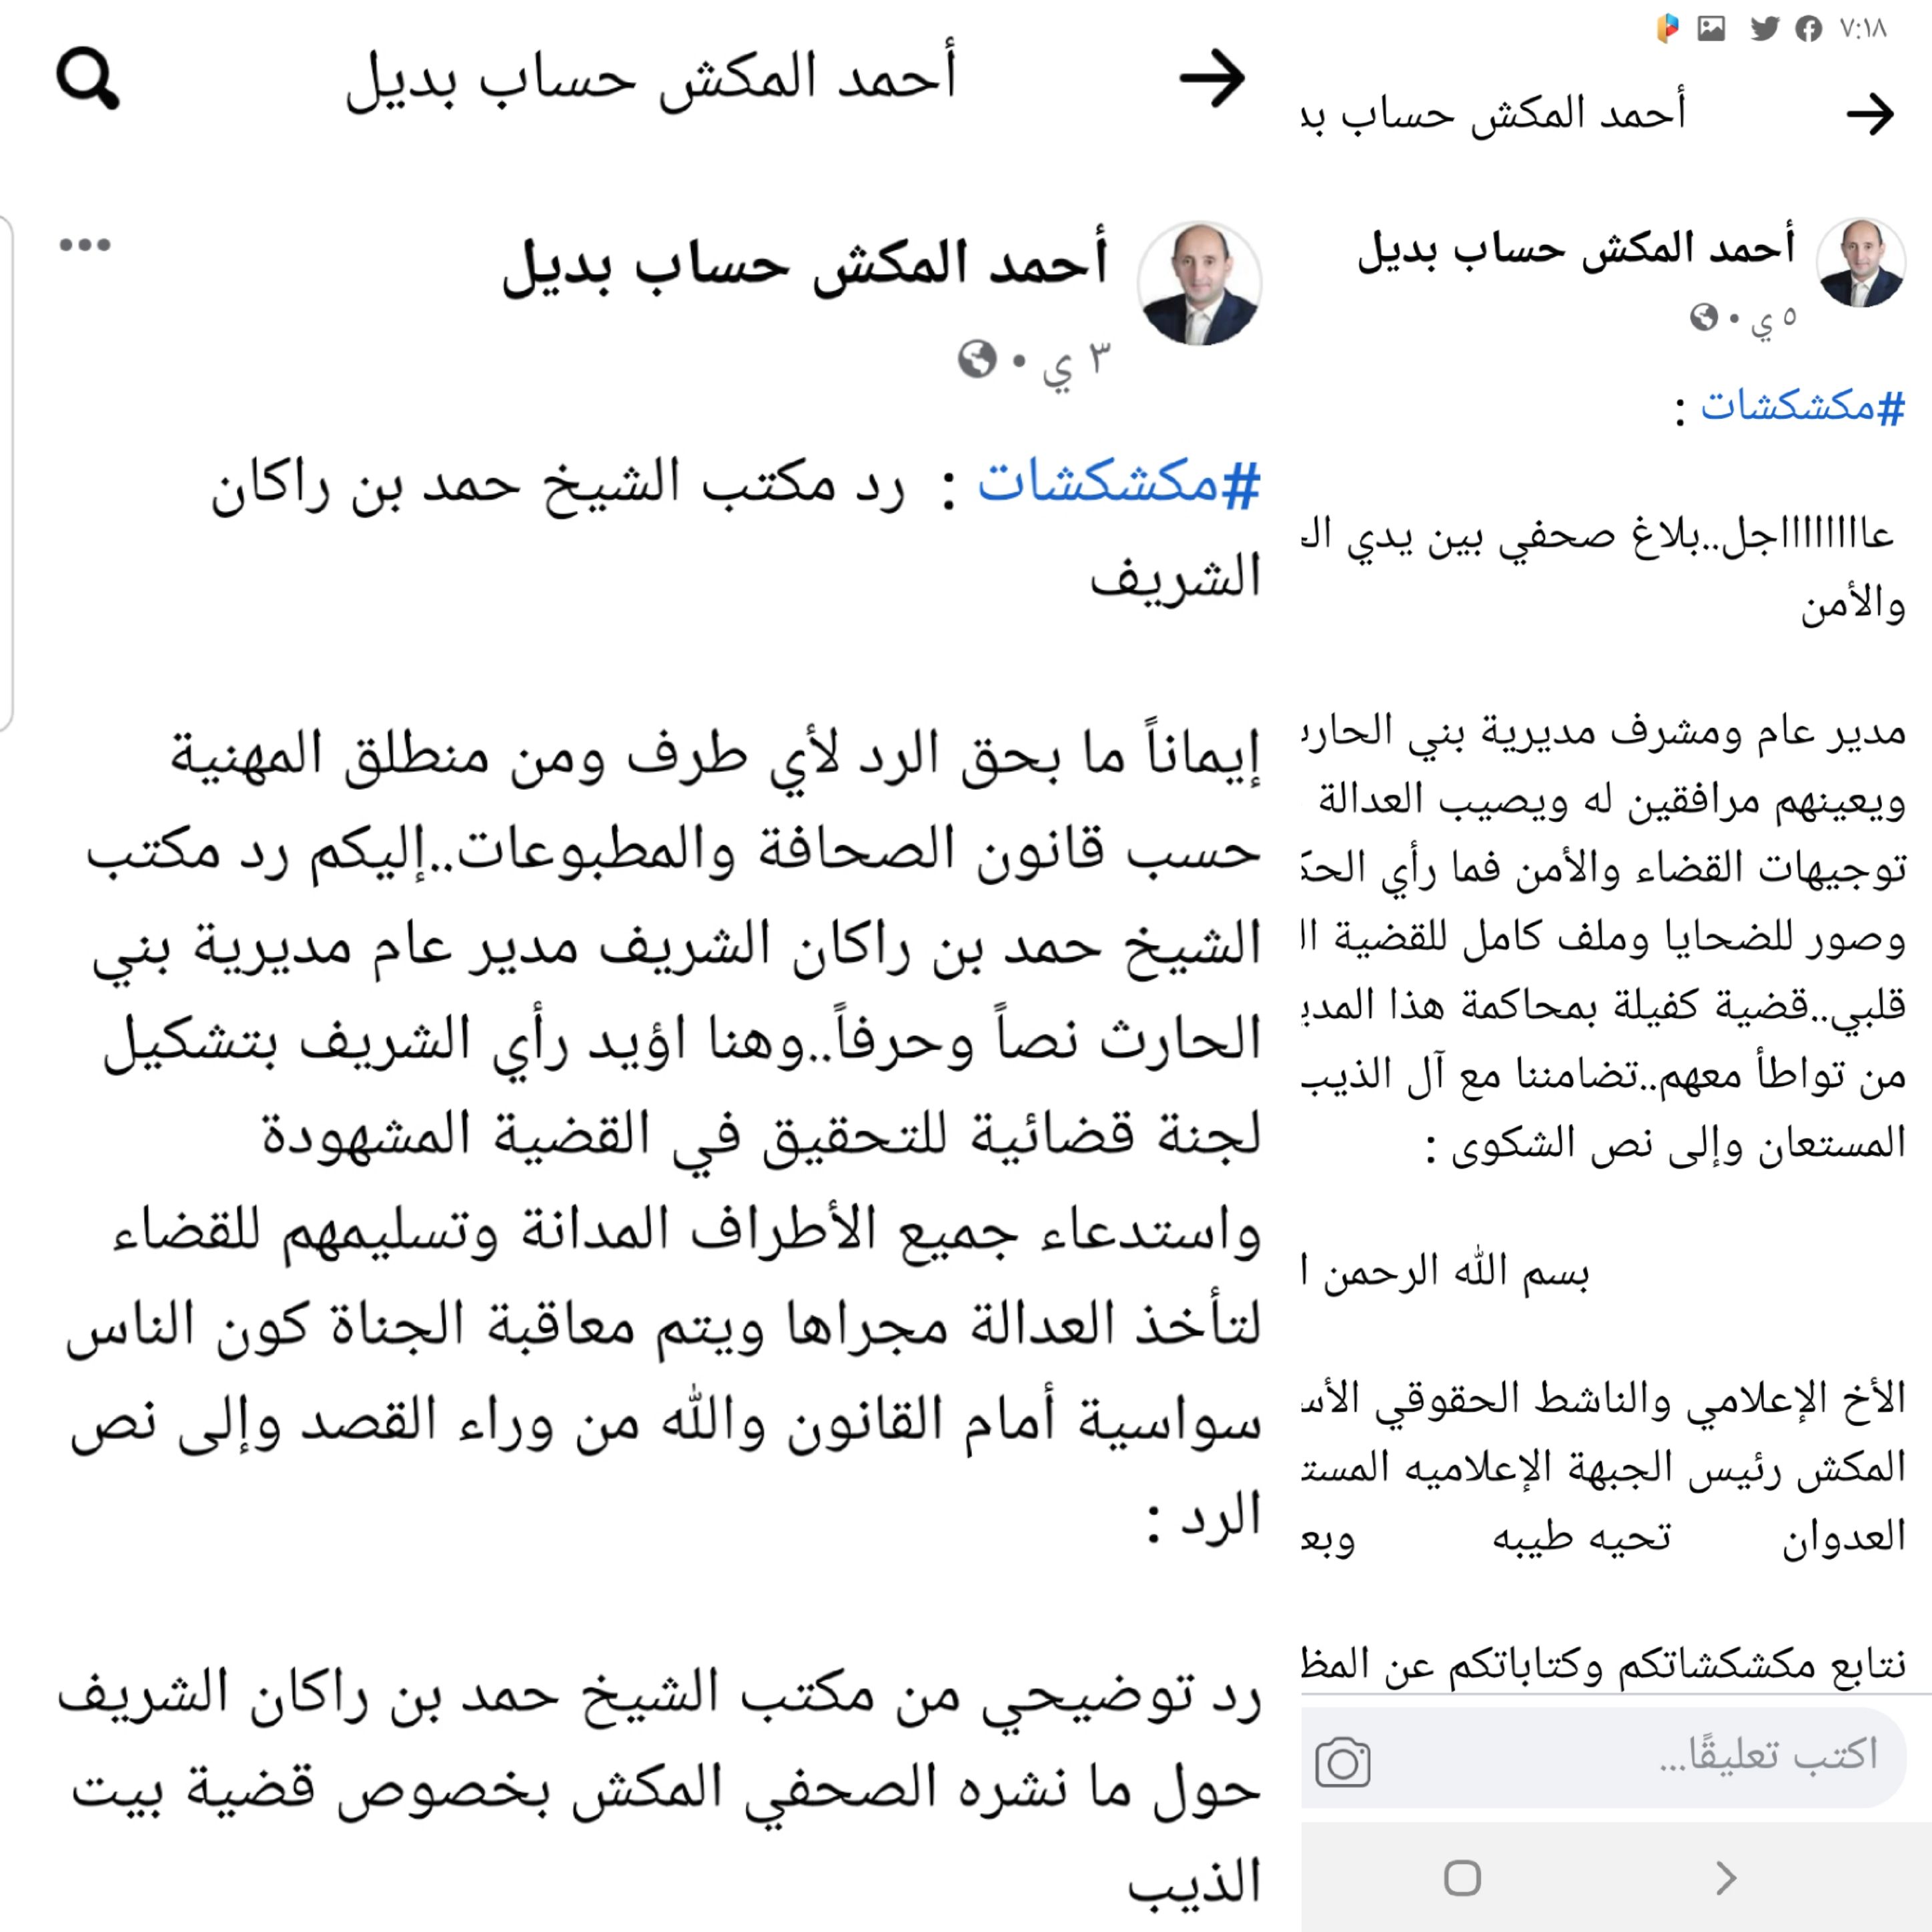 مكتب الشيخ حمد بن راكان الشريف يأسف من نقل معلومات مغلوطة في قضية بيت الذيب ويوضح الحقيقة والصحفي المكش يؤيد